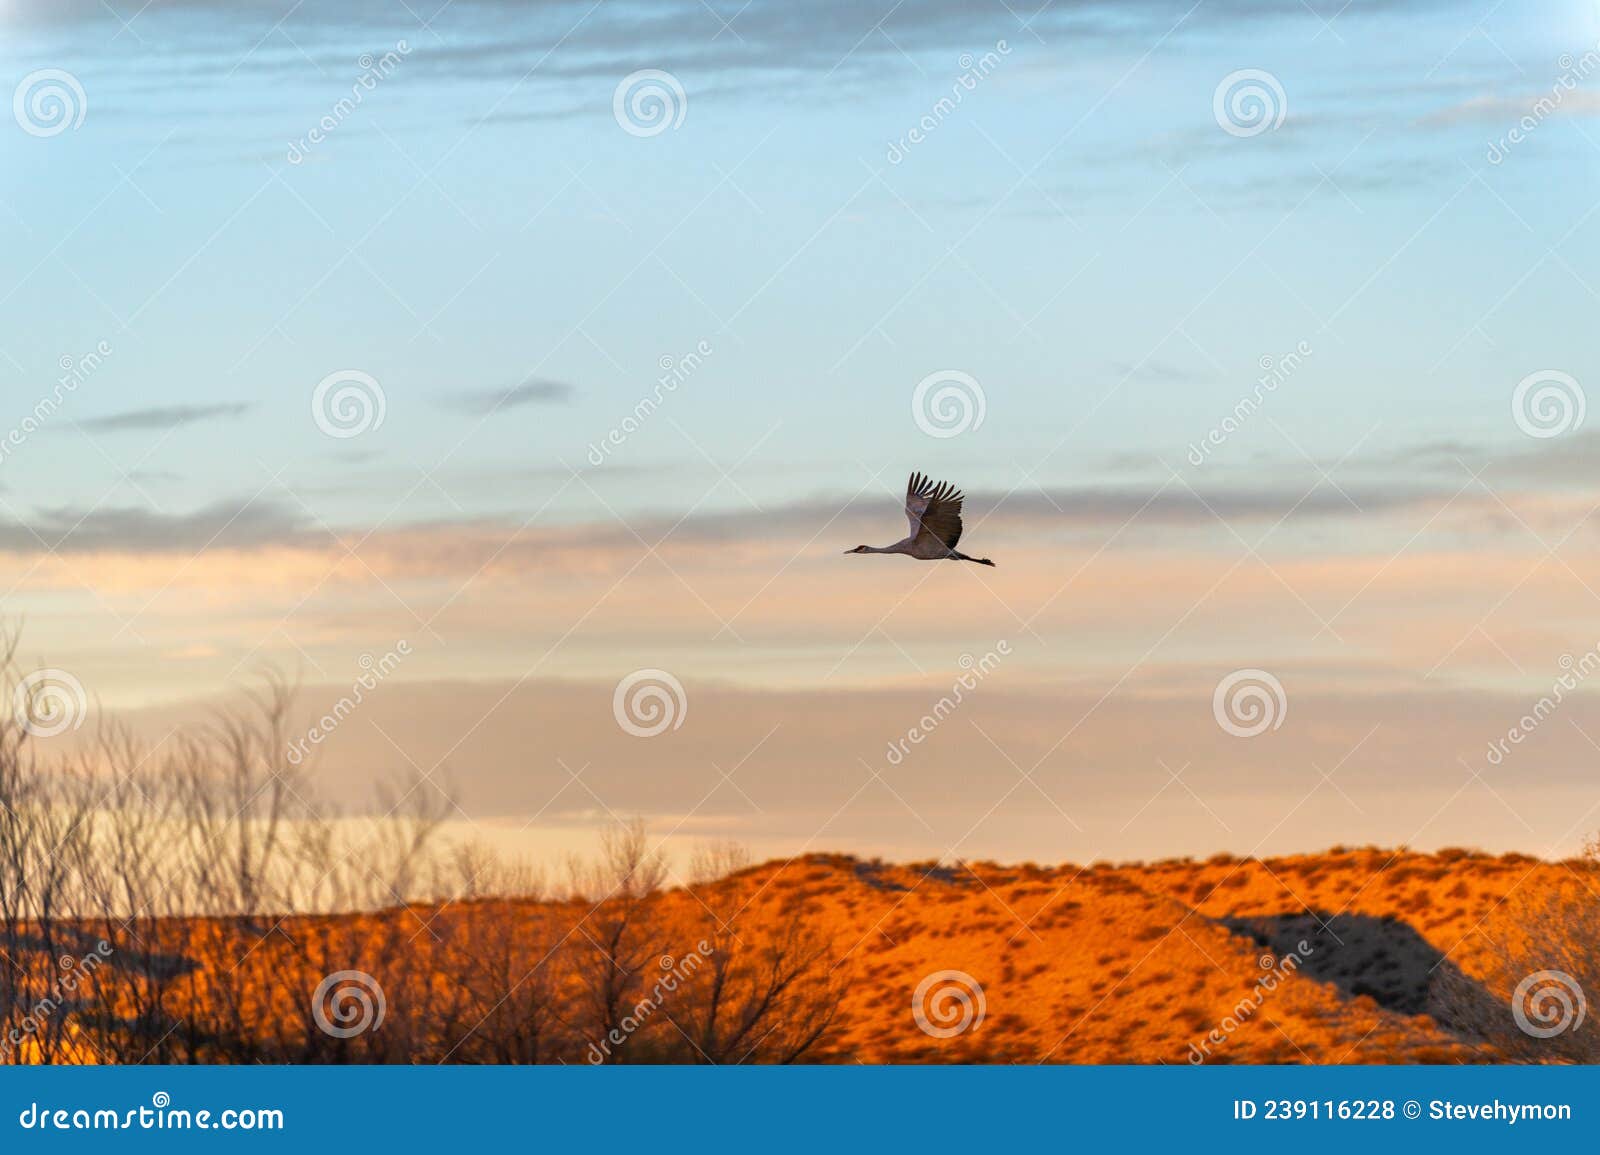 sandhill crane at sunrise over bosque del apache